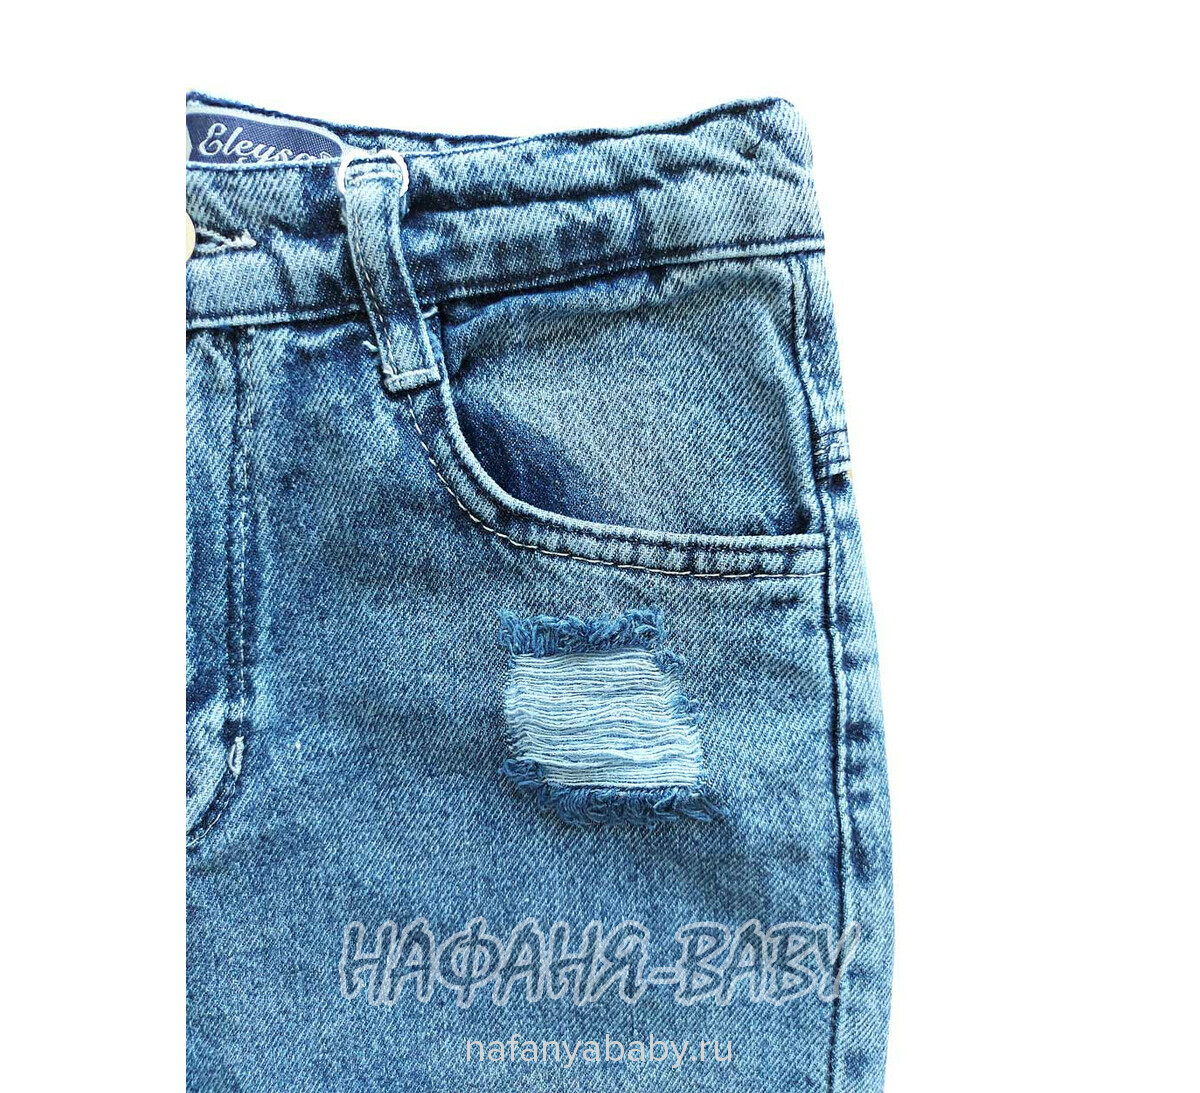 Джинсы ELEYSA Jeans арт: 65822 для девочки 13-16 лет, цвет синий, оптом Турция